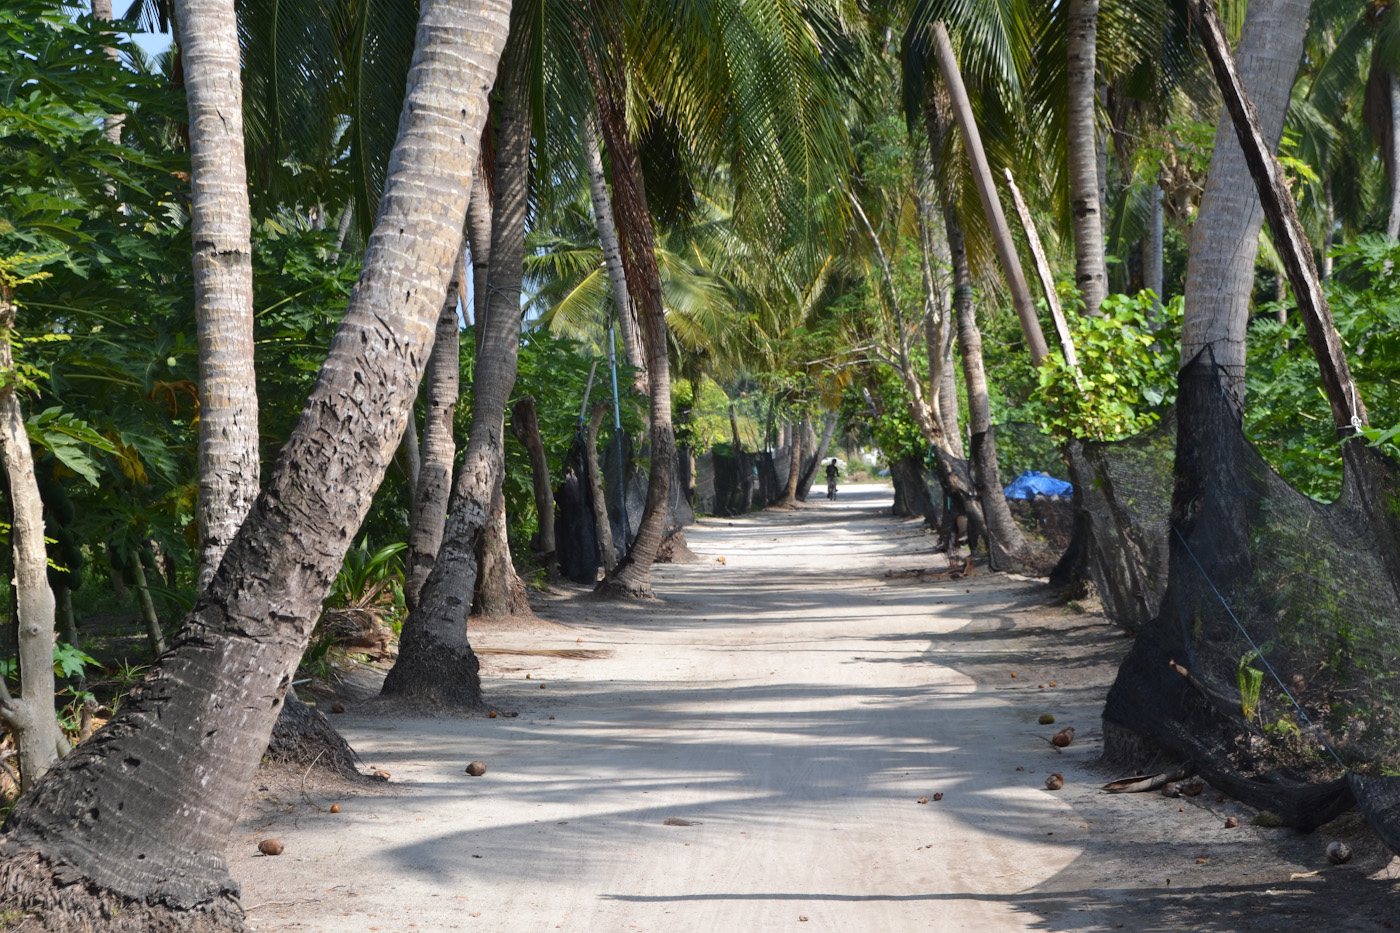 Фотография 22. Пальмовая аллея, ведущая на пляж, на острове Тодду. Можно ли съездить на Мальдивы своим ходом. 1/200, 7,1, 100, 5.